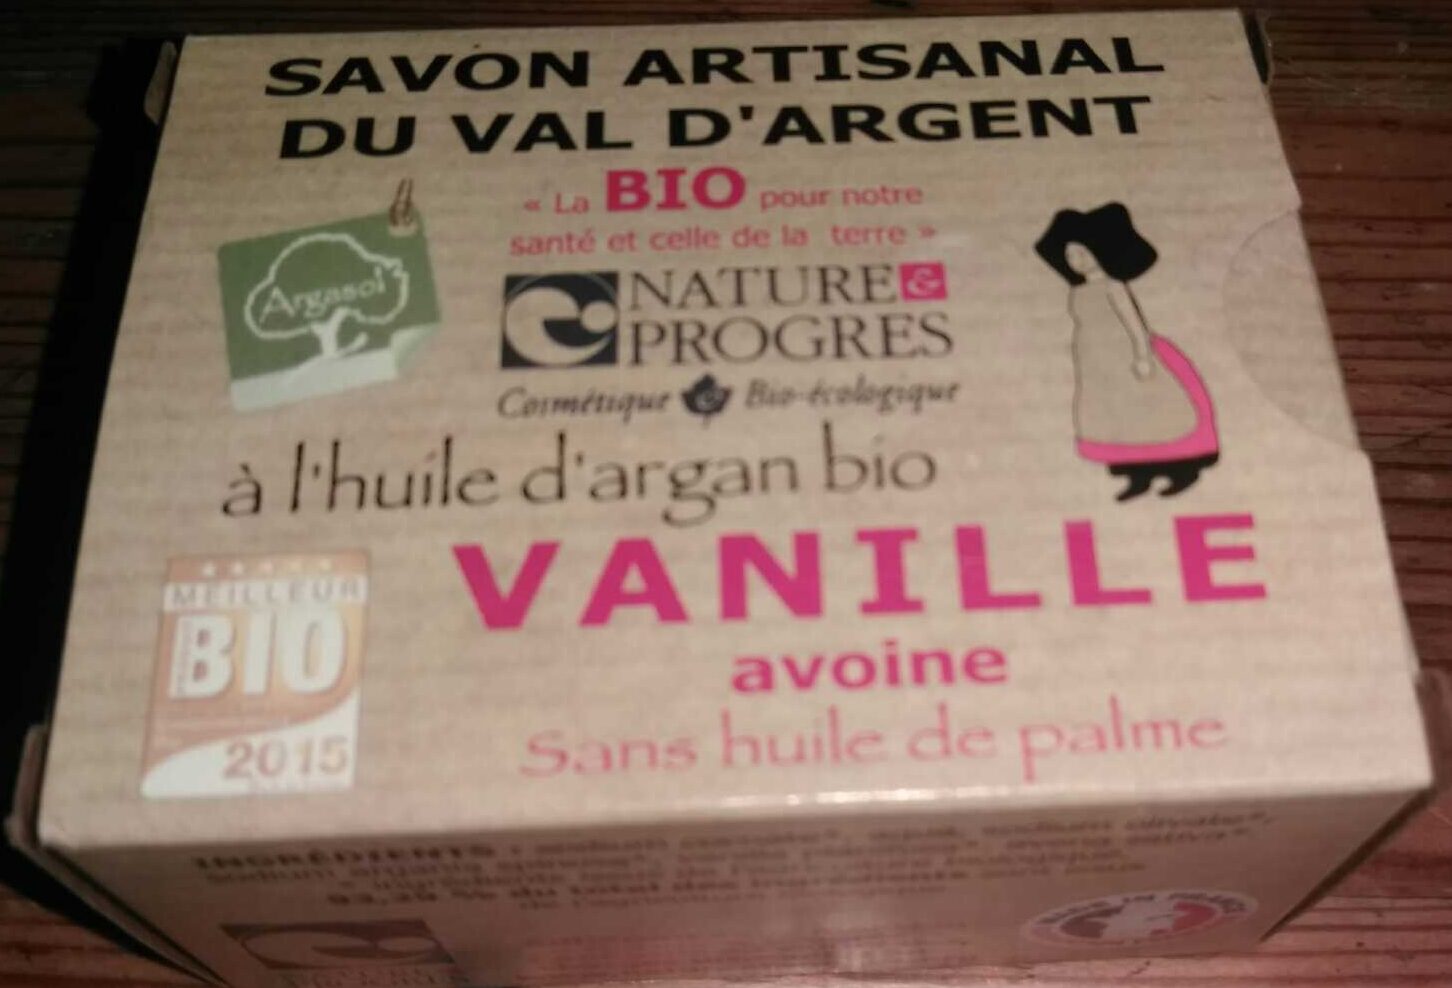 Savon artisanal du Val d'Argent à l'huile d'argan bio Vanille Avoine - Produto - fr